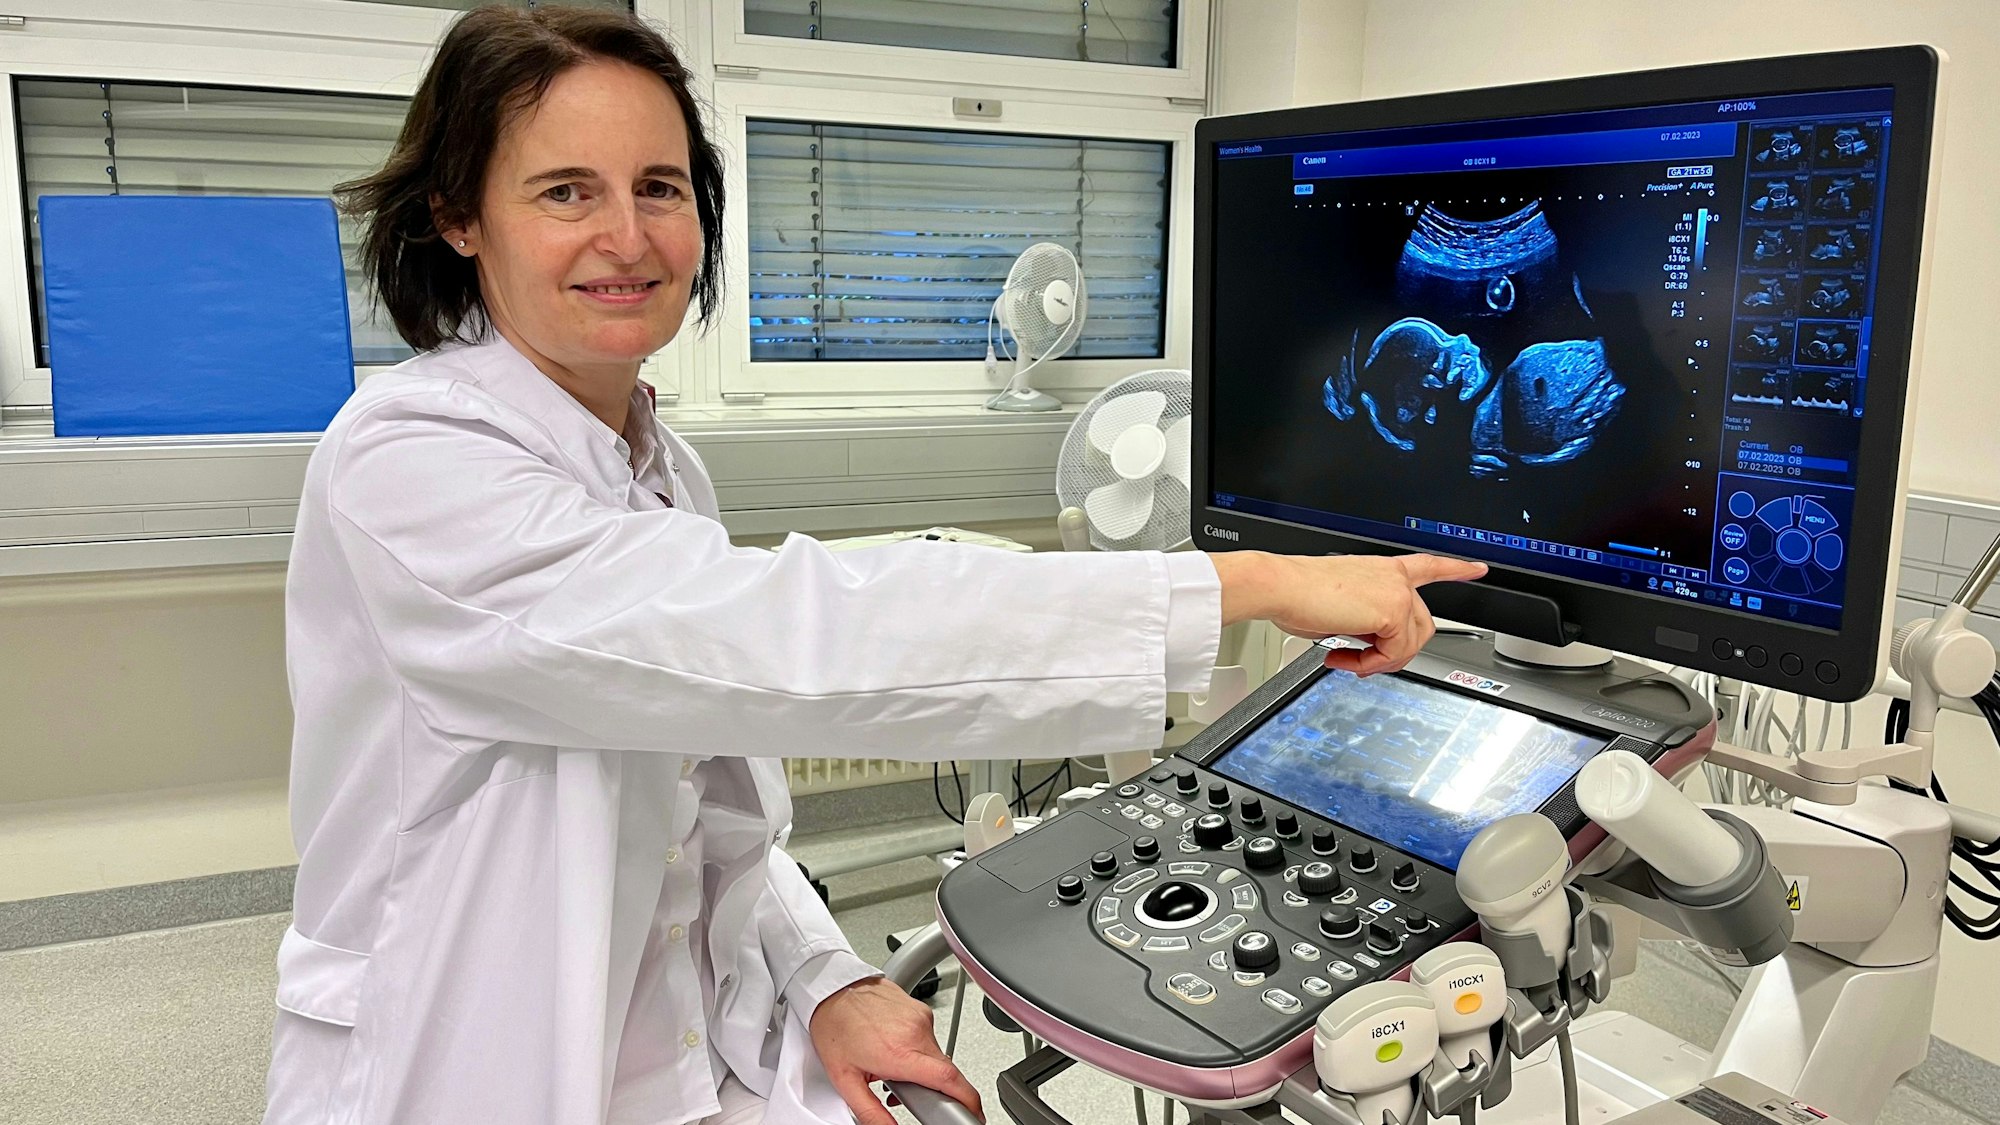 Pränataldiagnostikerin Otilia Geist vor einem hochauflösenden Ultraschall-Gerät